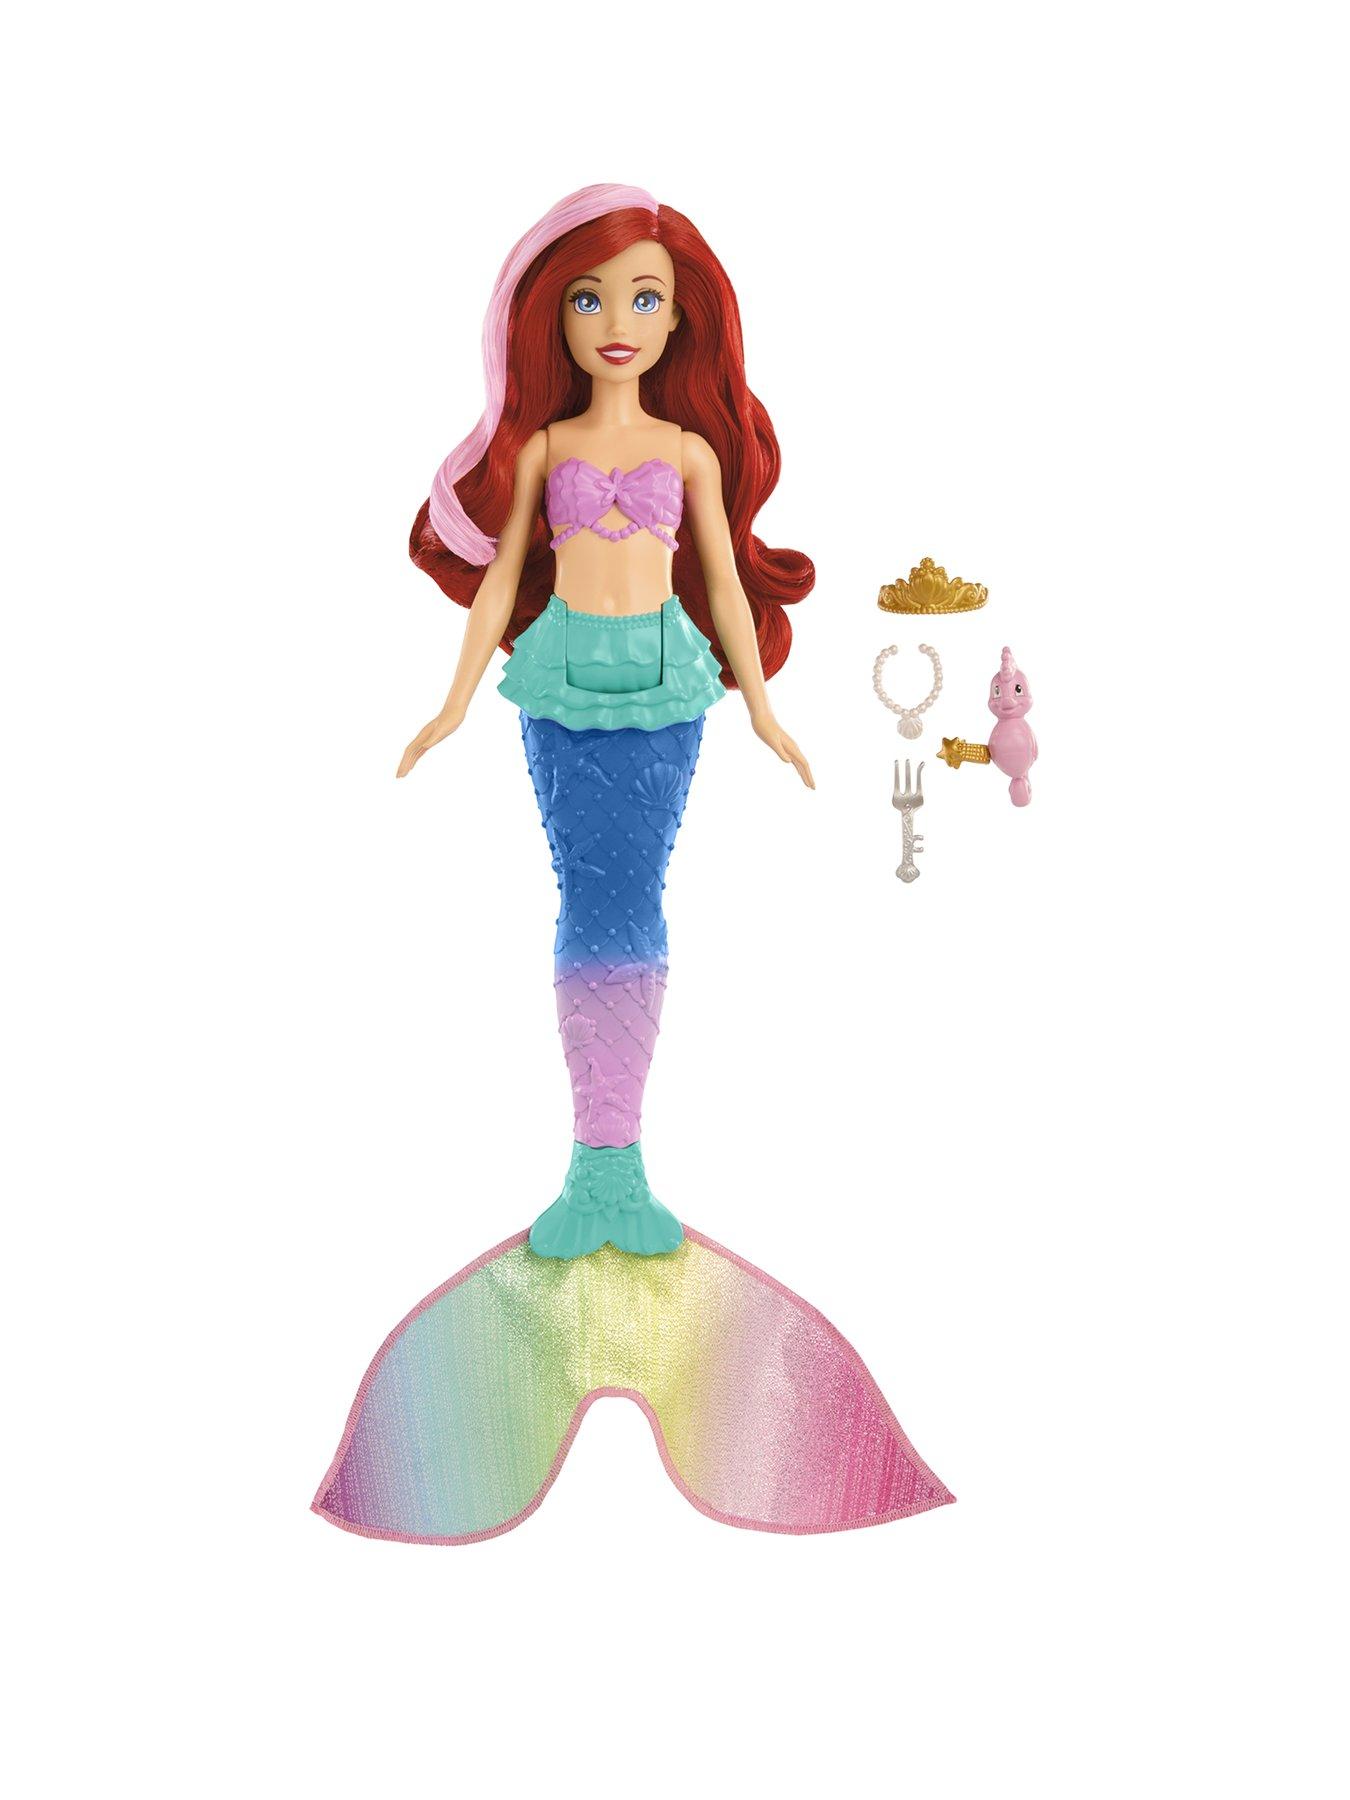 Disney Princess Swim & Splash Colour Change Ariel Doll